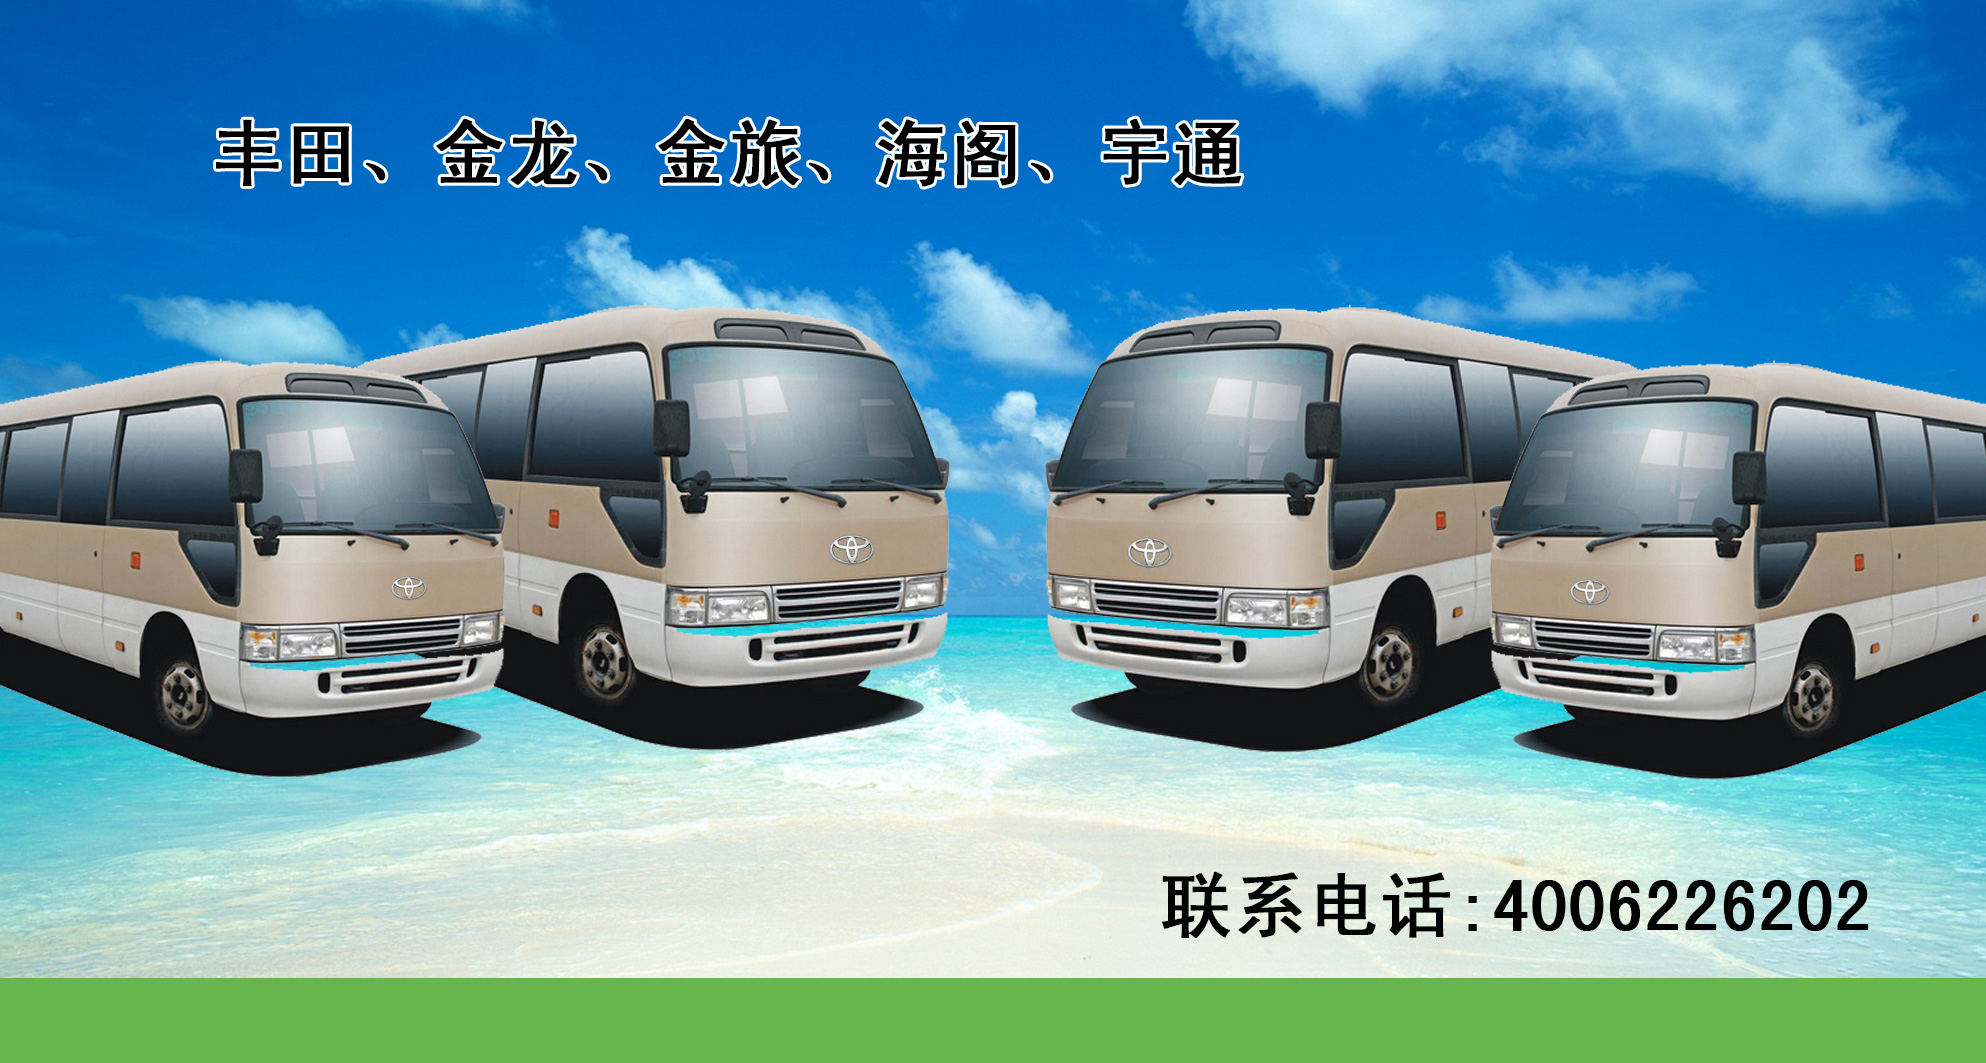 贵州贵阳丰田商务车大巴车出租之租车将成为一个新的选择